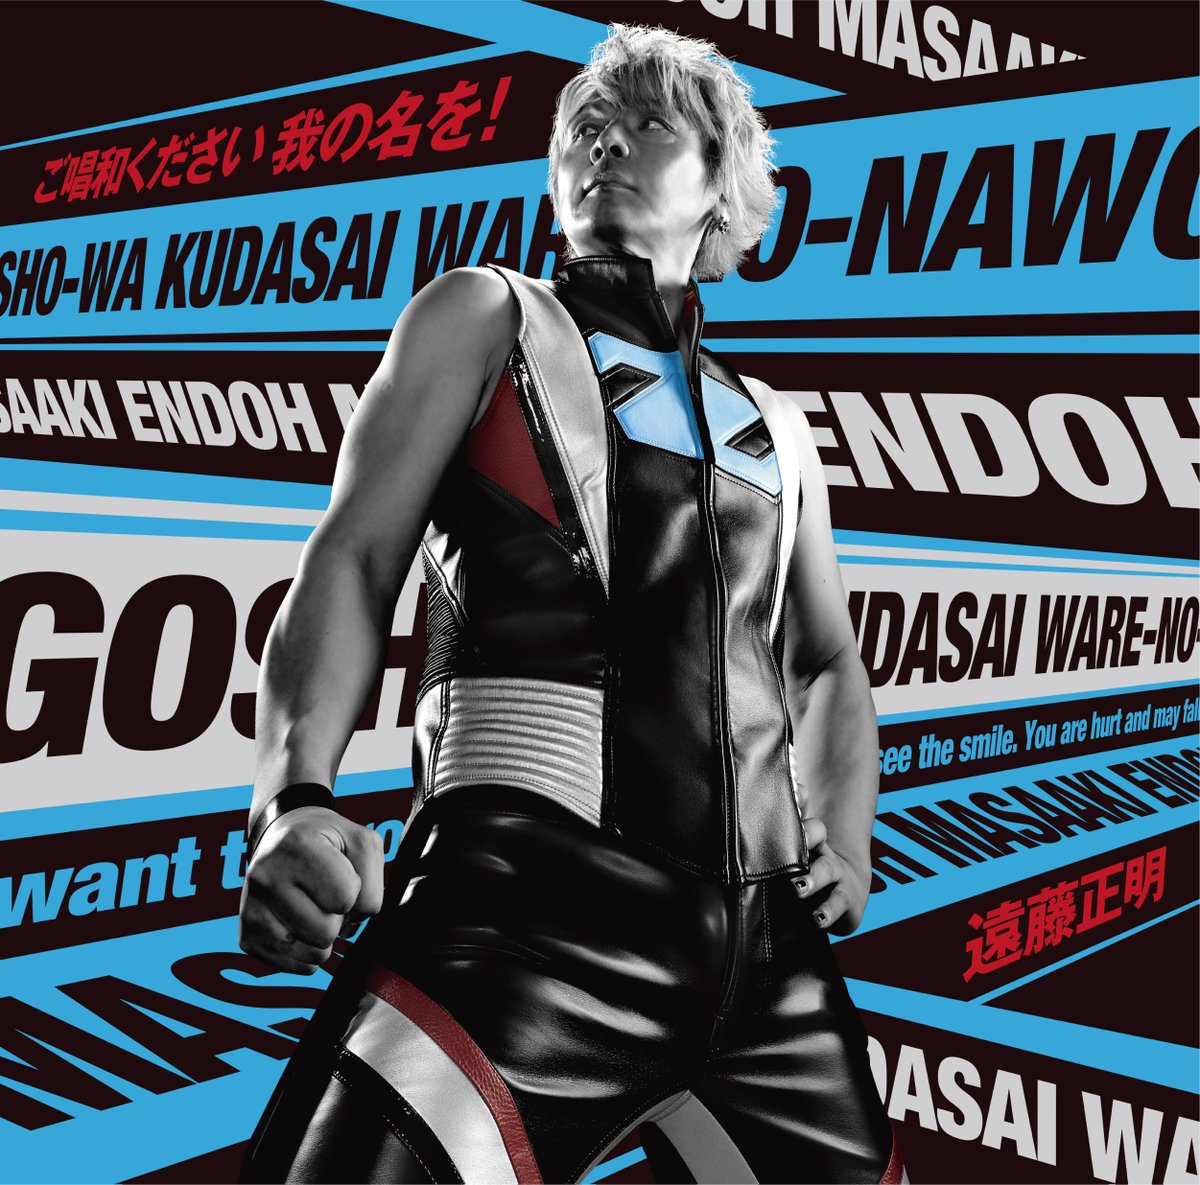 Cover art for『Masaaki Endoh - Goshouwa Kudasai Ware no Na wo!』from the release『Goshouwa Kudasai Ware no Na wo!』